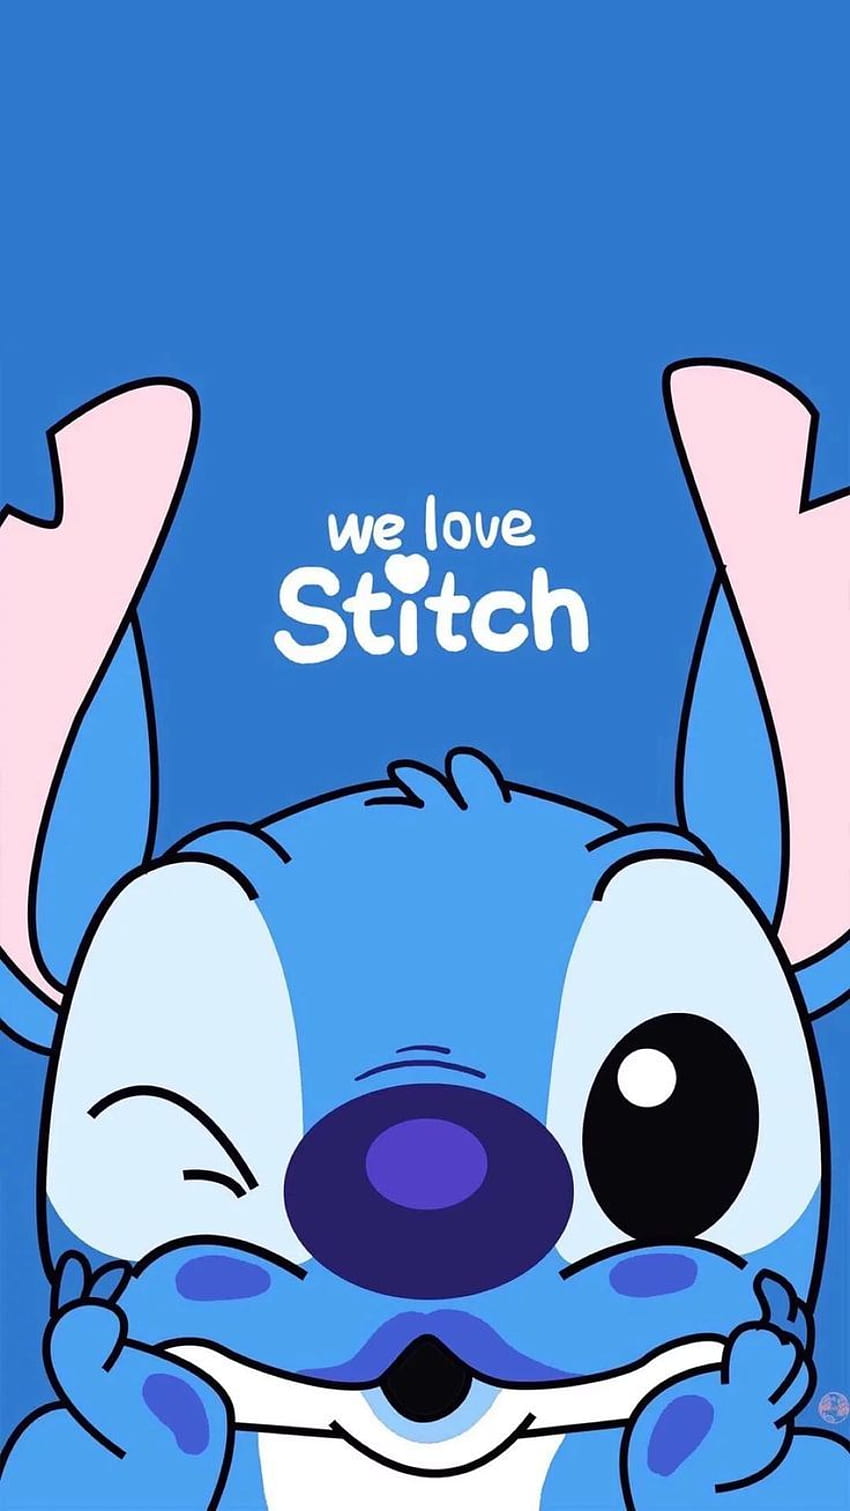 Stitch là một chú chó con đáng yêu với đôi tai lớn và một cái mũi xinh xắn. Hãy xem những hình ảnh này để nhìn thấy anh ta đang làm gì và có thể thấy được vẻ đẹp đáng yêu của anh ấy.